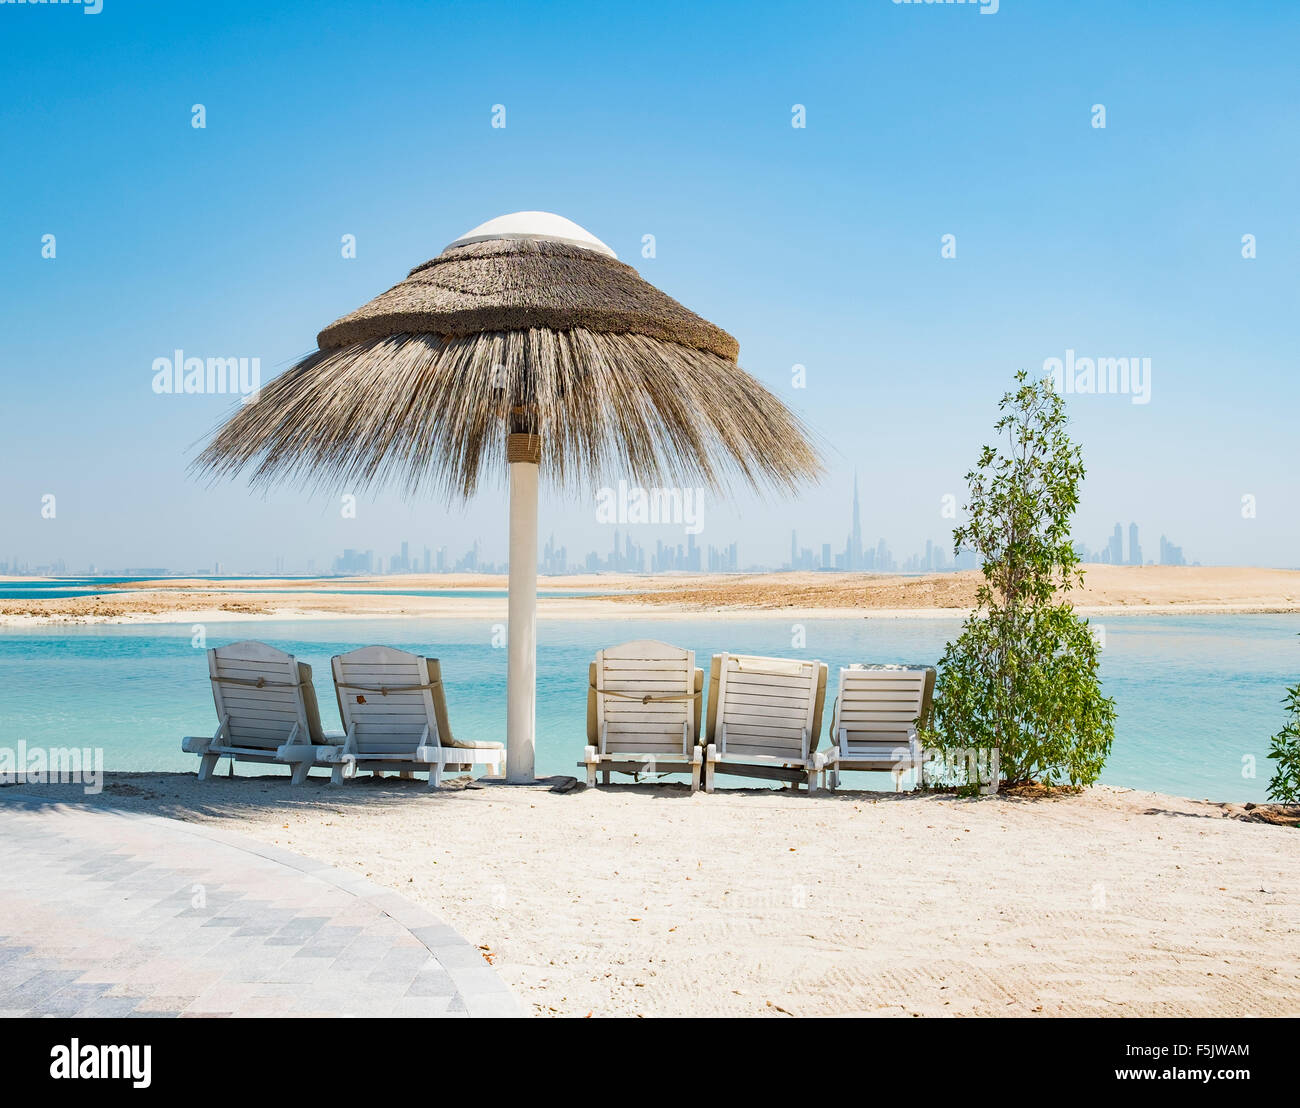 Vue sur l'Île Liban beach resort sur l'île, un homme fait partie du monde au large de la côte de Dubaï en Émirats Arabes Unis Banque D'Images